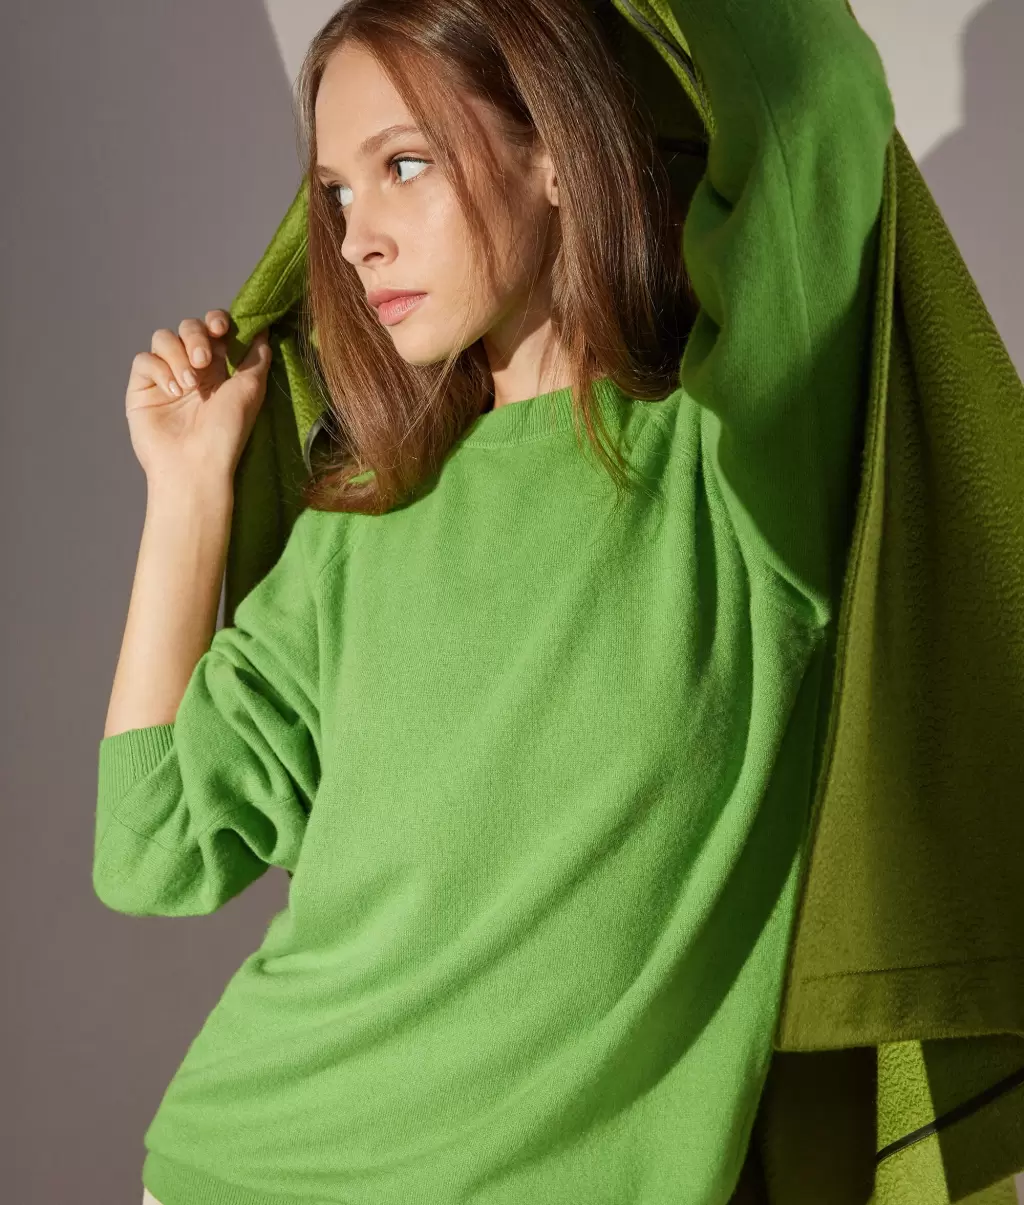 Falconeri Swetry Z Okrągłym Dekoltem Kobieta Bluzka Maxi Z Okągłym Dekoltem Z Kaszmiru Ultrasoft Green